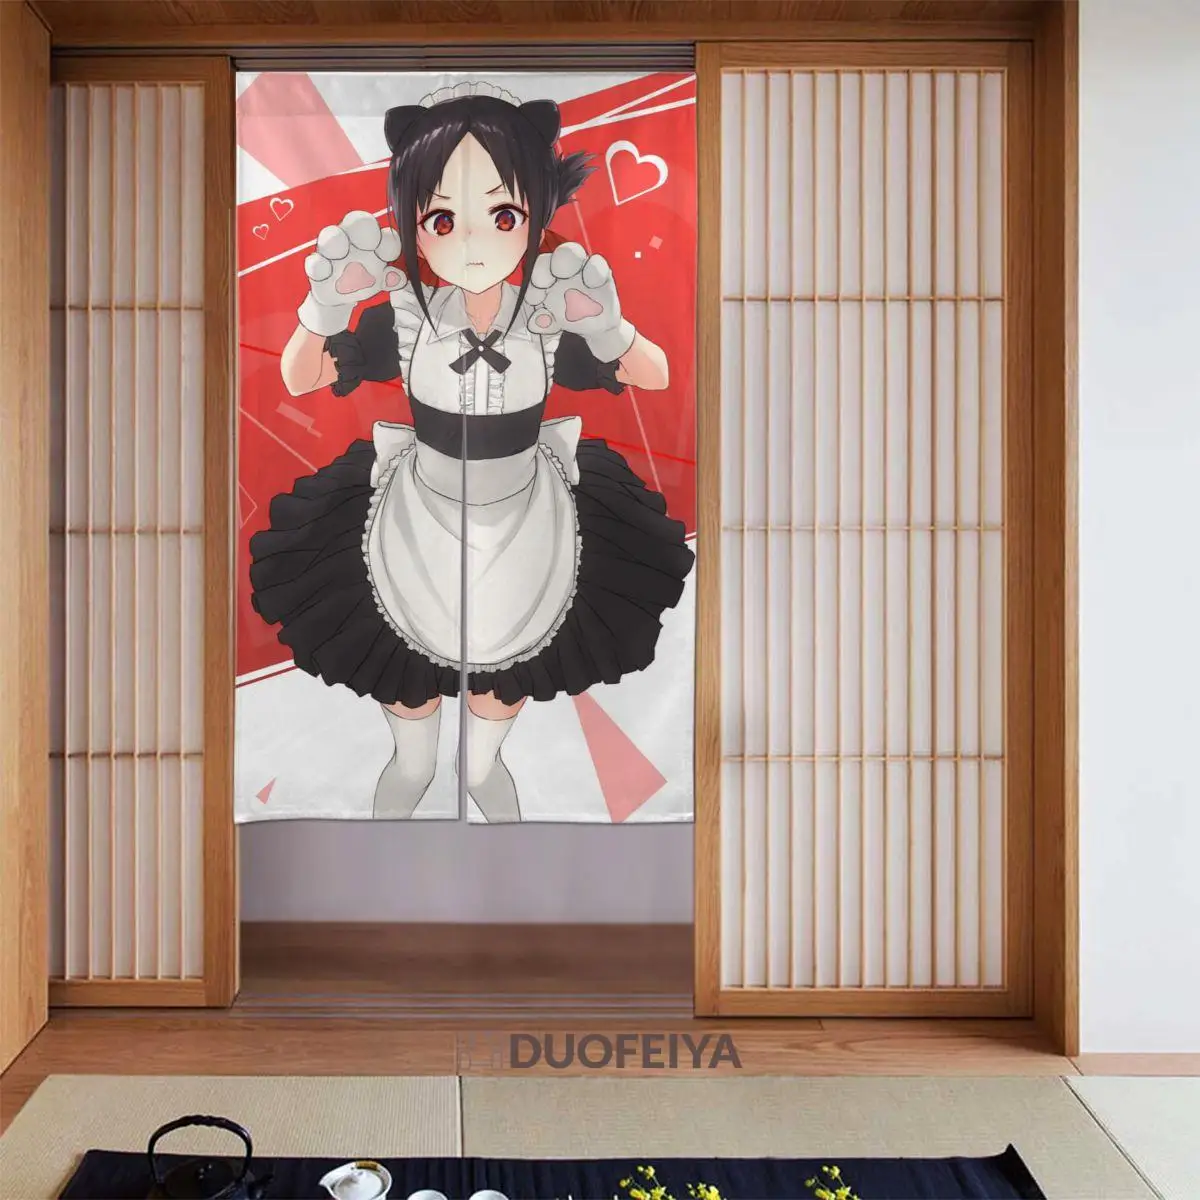 

Японская дверная занавеска Kaguya-sama: Love Is War, затемняющие шторы из хлопка и льна в стиле аниме, занавески для дверей и душевых декораций